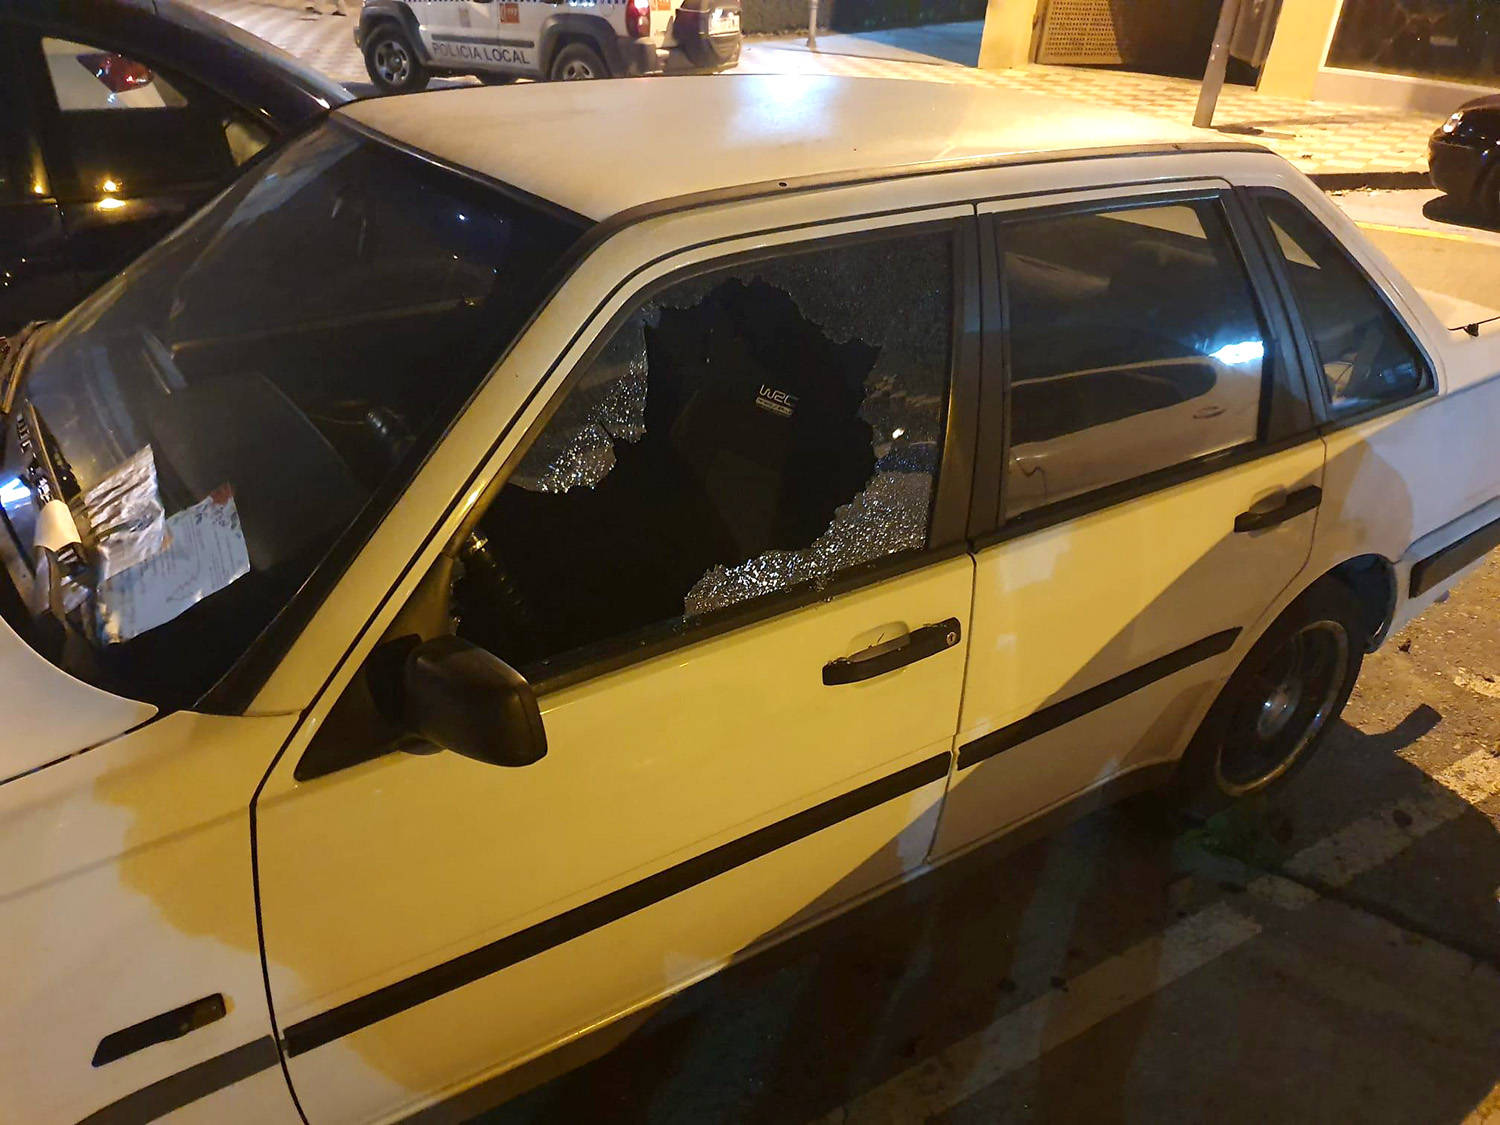 El sospechoso rompía los cristales de las ventanas para acceder al interior de los vehículos. POLICÍA LOCAL